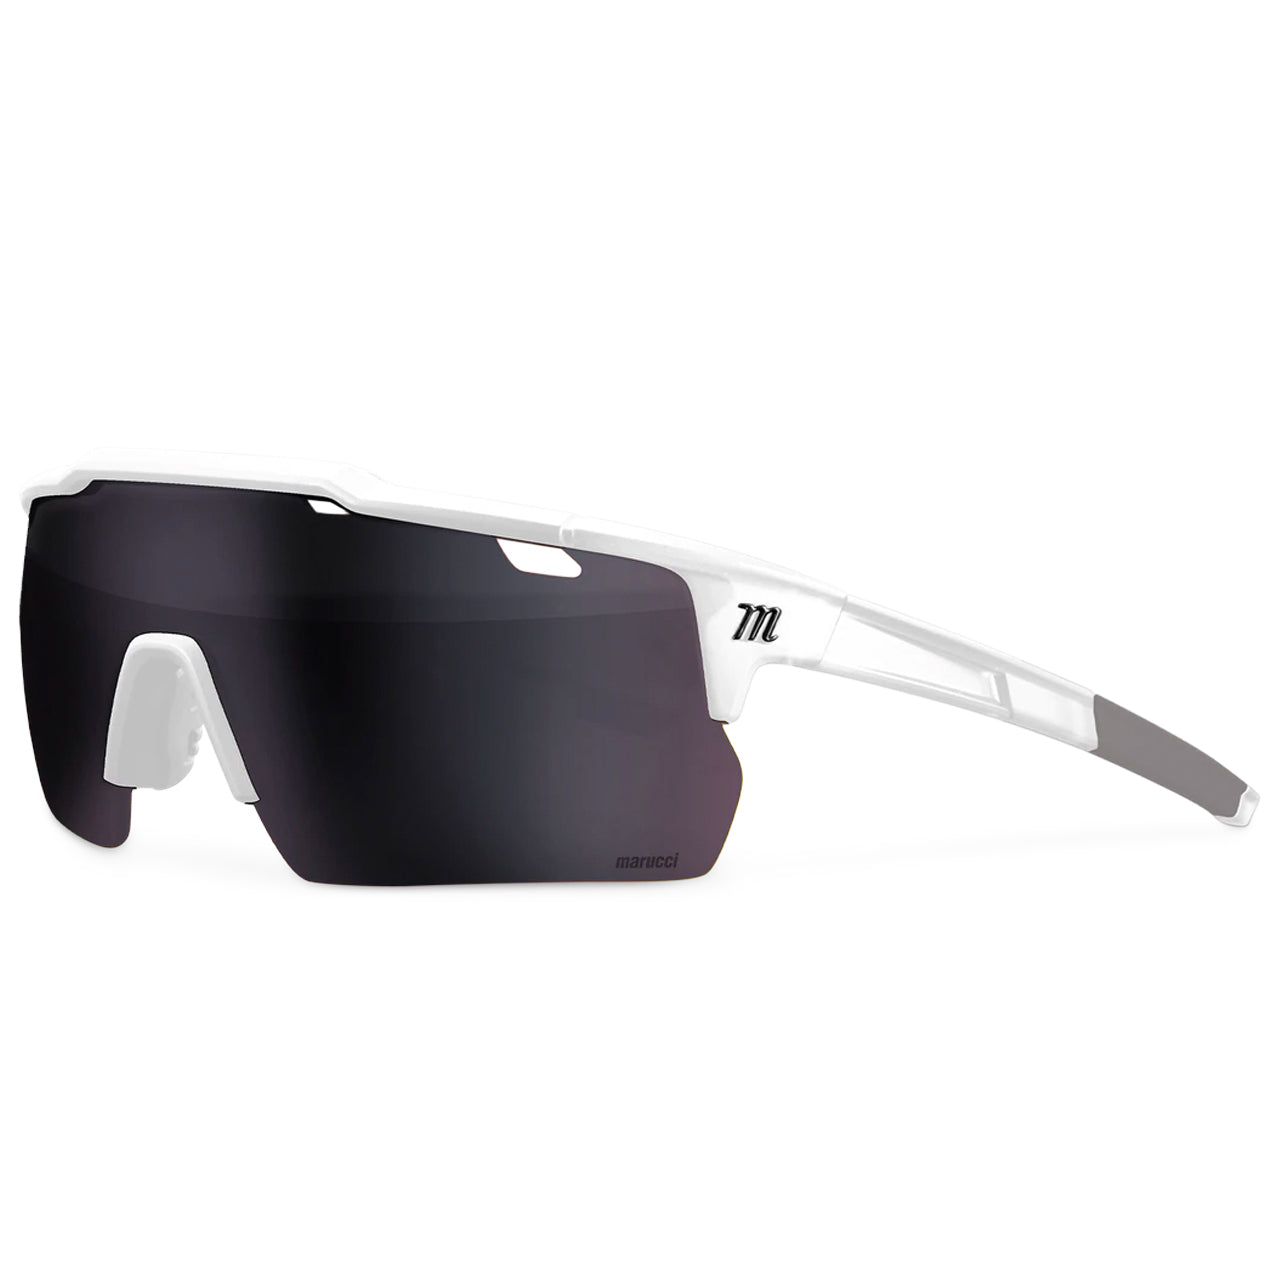 Marucci Shield Performance Sunglasses